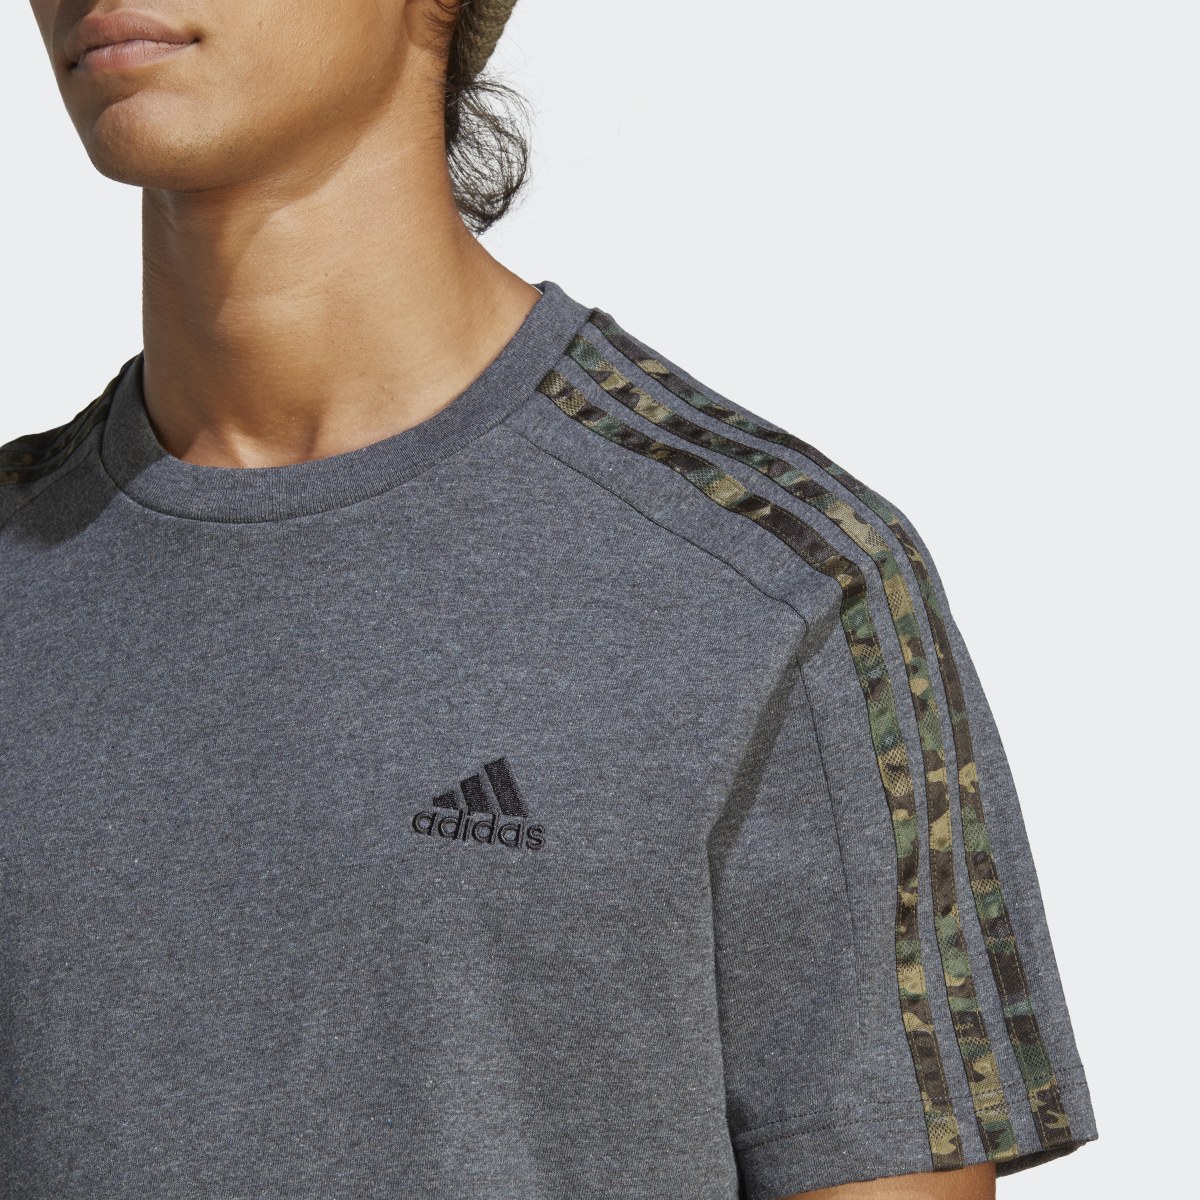 Adidas Essentials Single Jersey 3-Streifen T-Shirt. 6